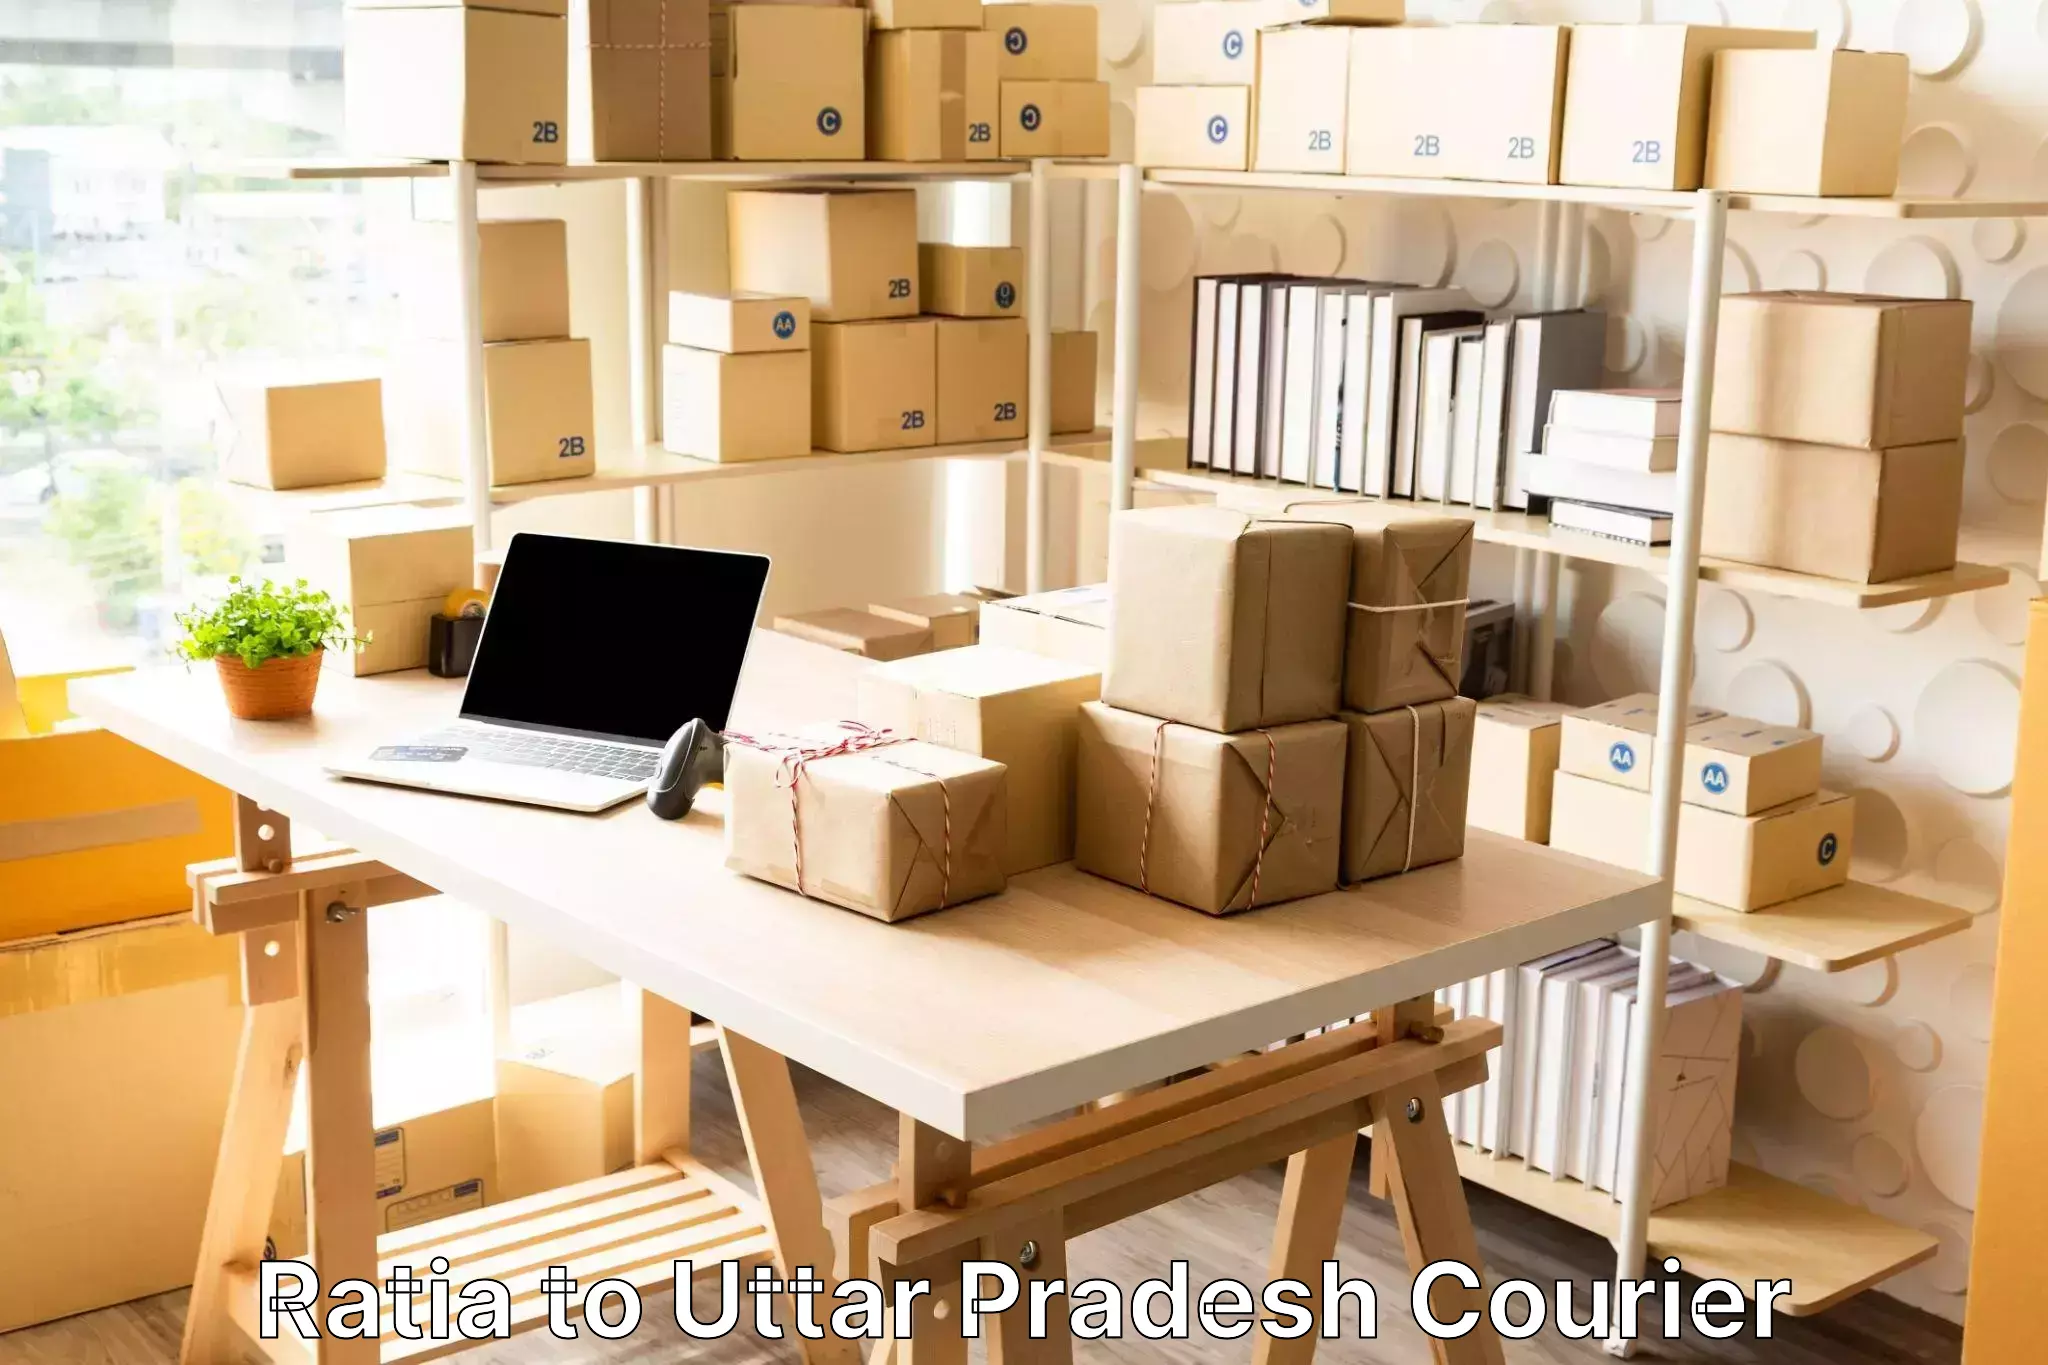 Baggage courier logistics Ratia to Uttar Pradesh